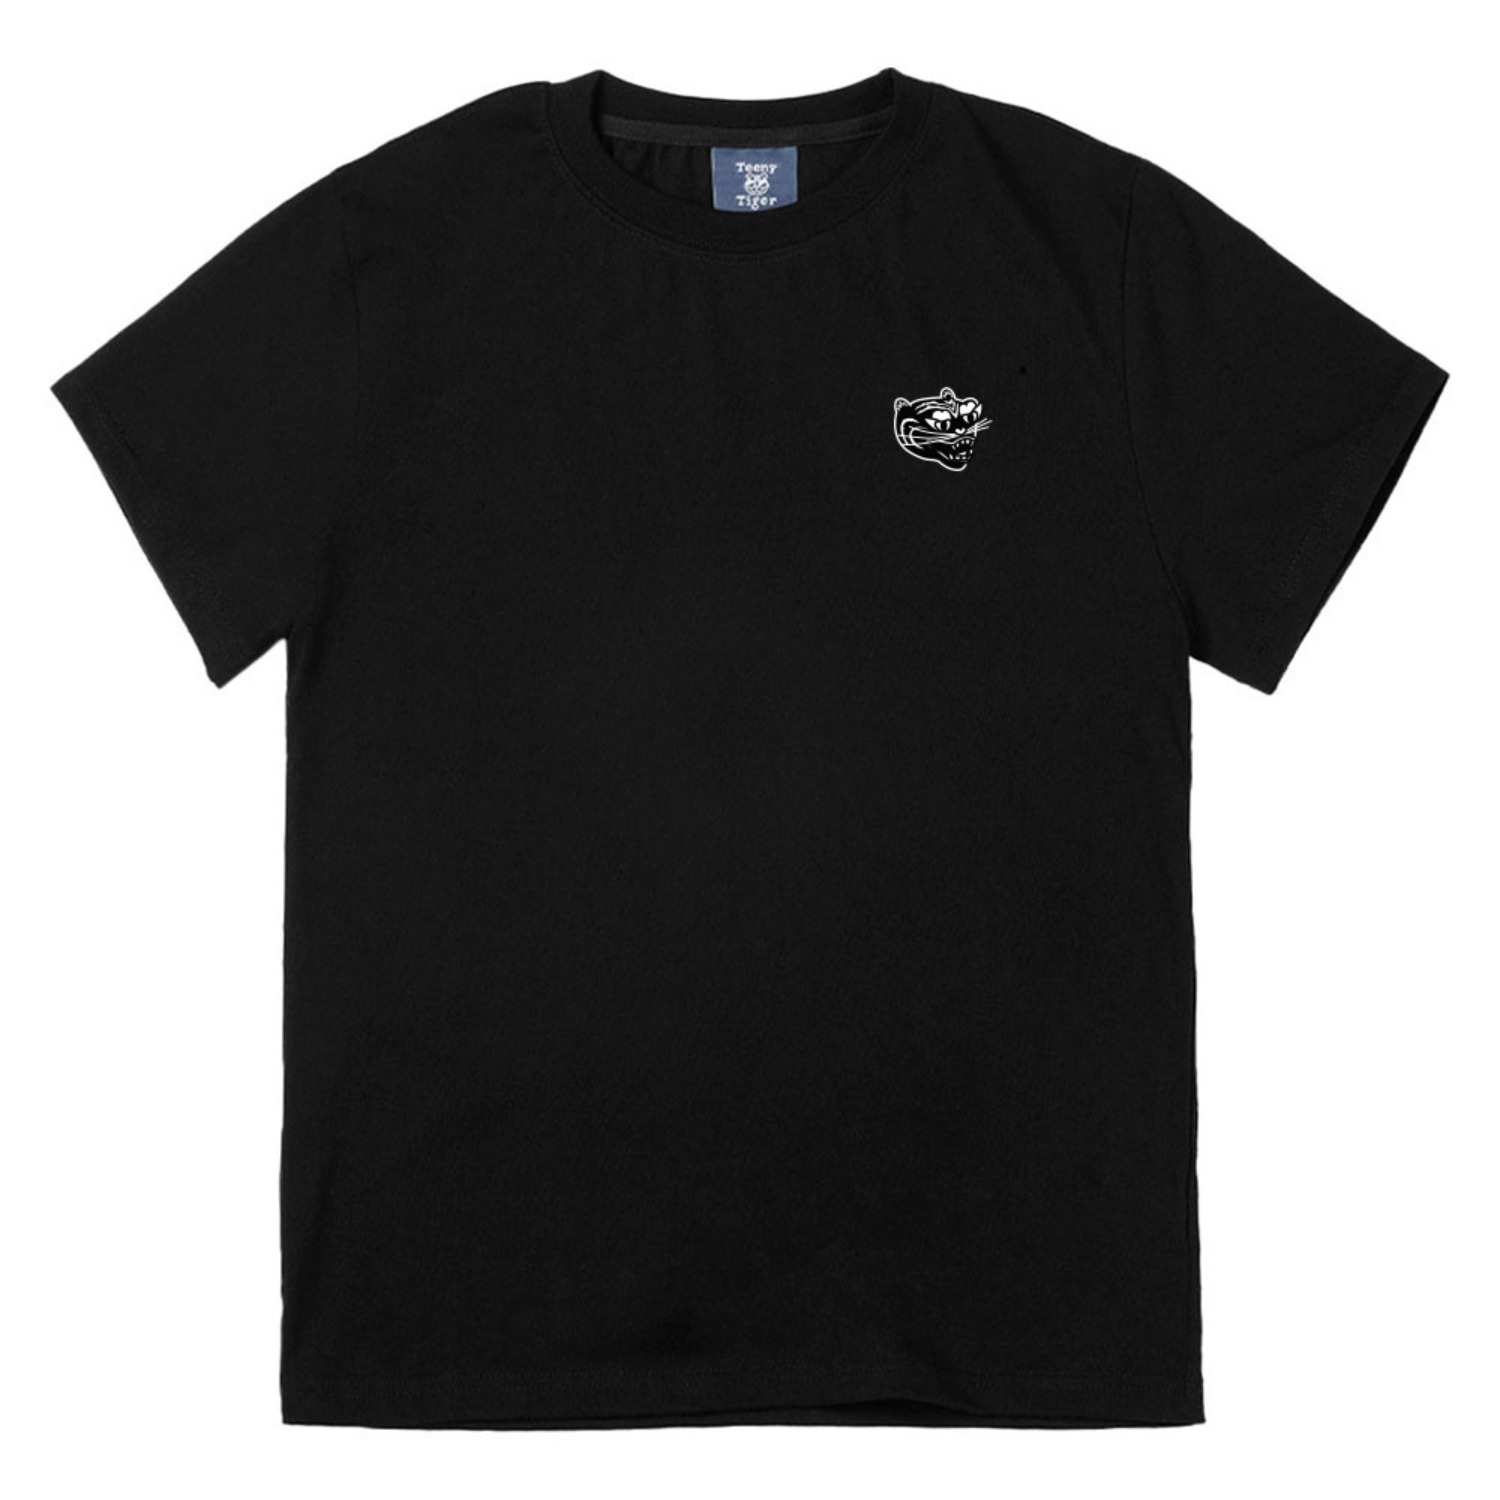 호랑이 반팔티 블랙Tiger short sleeve T-shirts (Black)